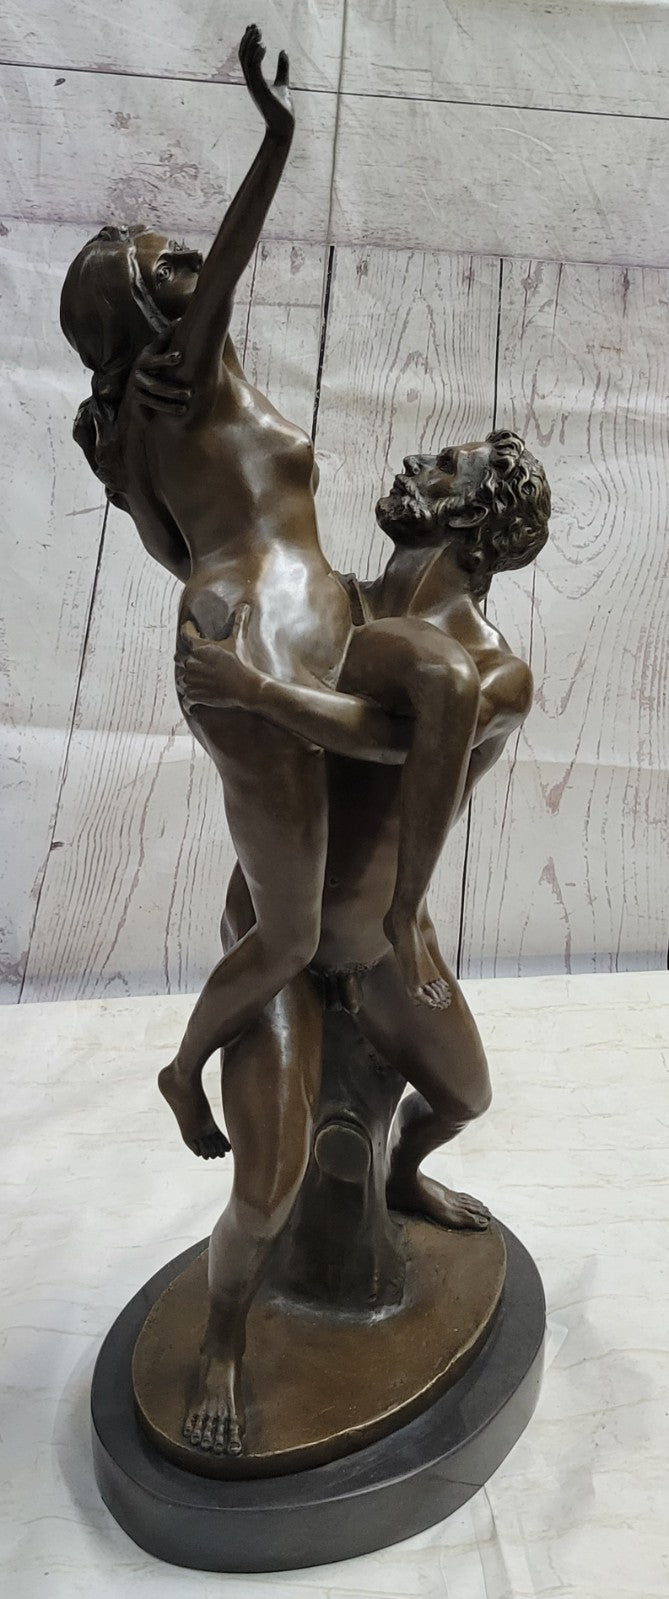 Dance Bronze Sculptures capture the rhythmic, seductive movements of couples